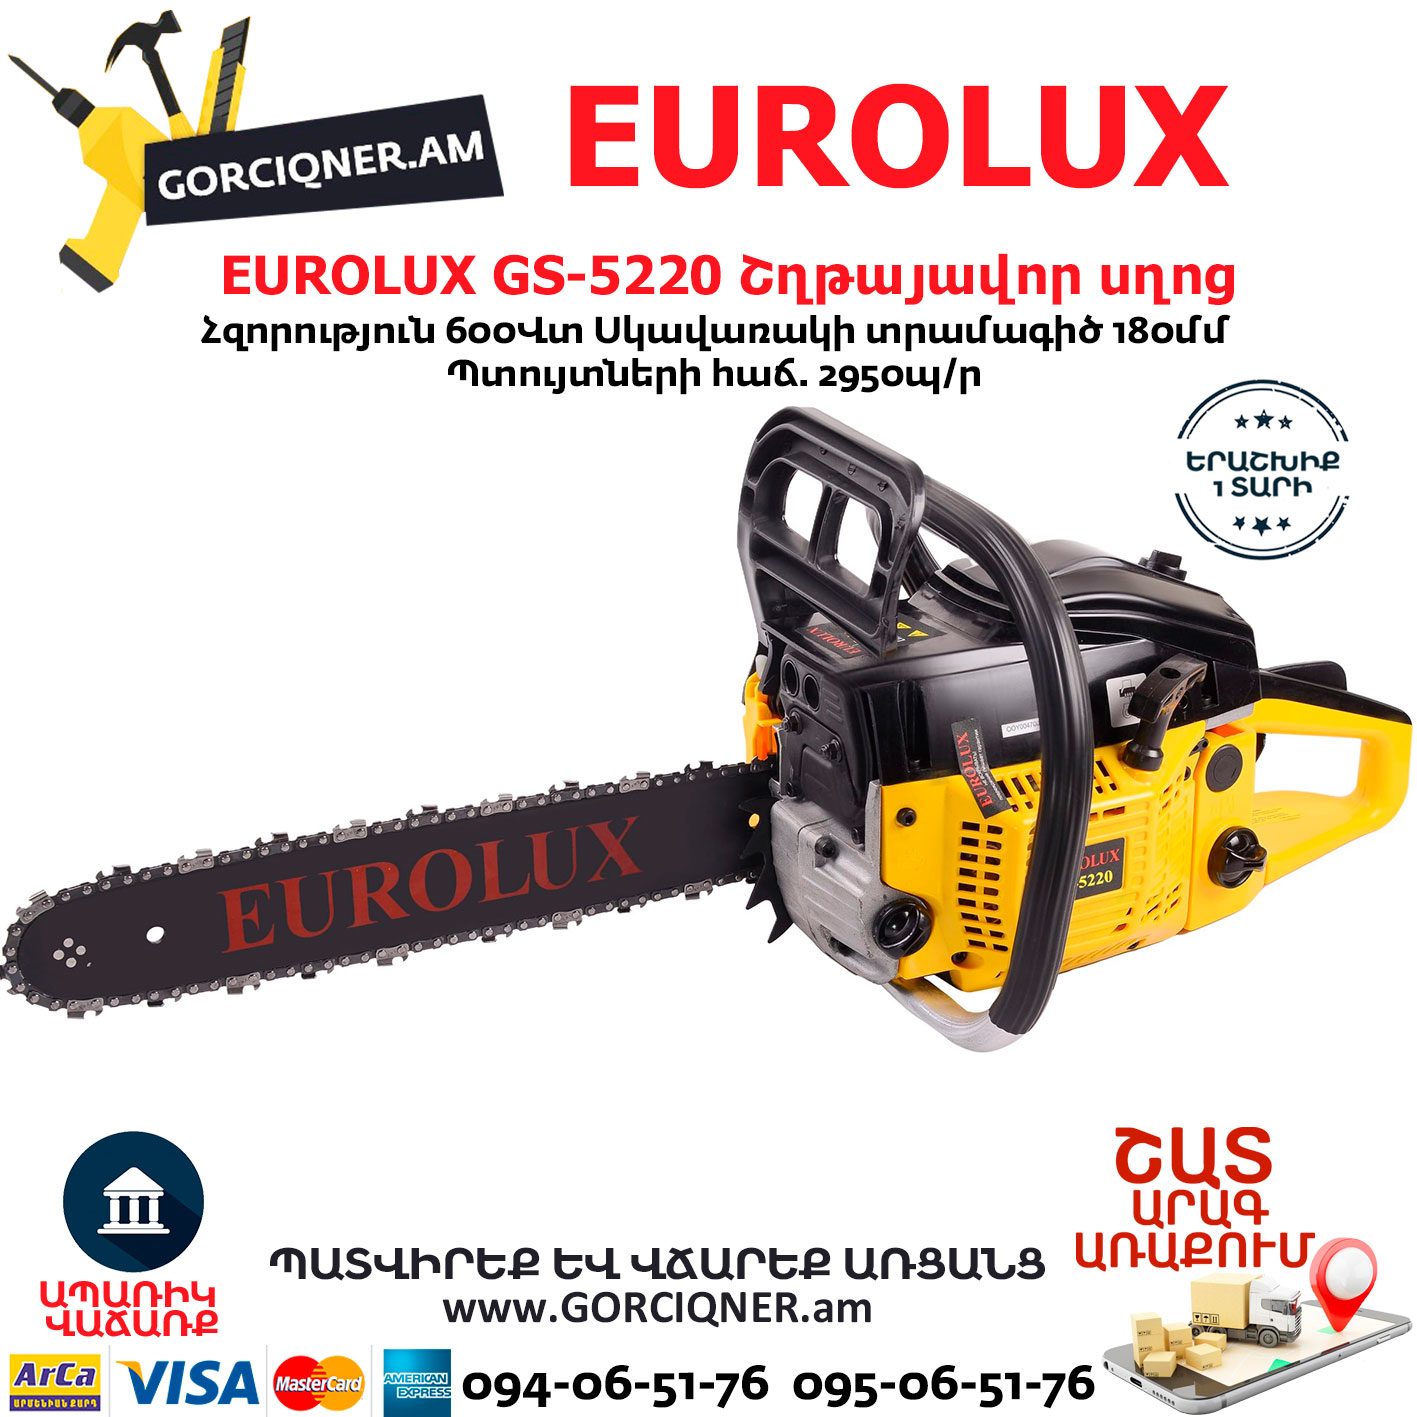 Eurolux gs 5220. Стартер Eurolux 5220. Пила Eurolux GS-5220 топливный фильтр. Пила Eurolux GS-5220 настройка оборотов. Oravardov gorciqner.